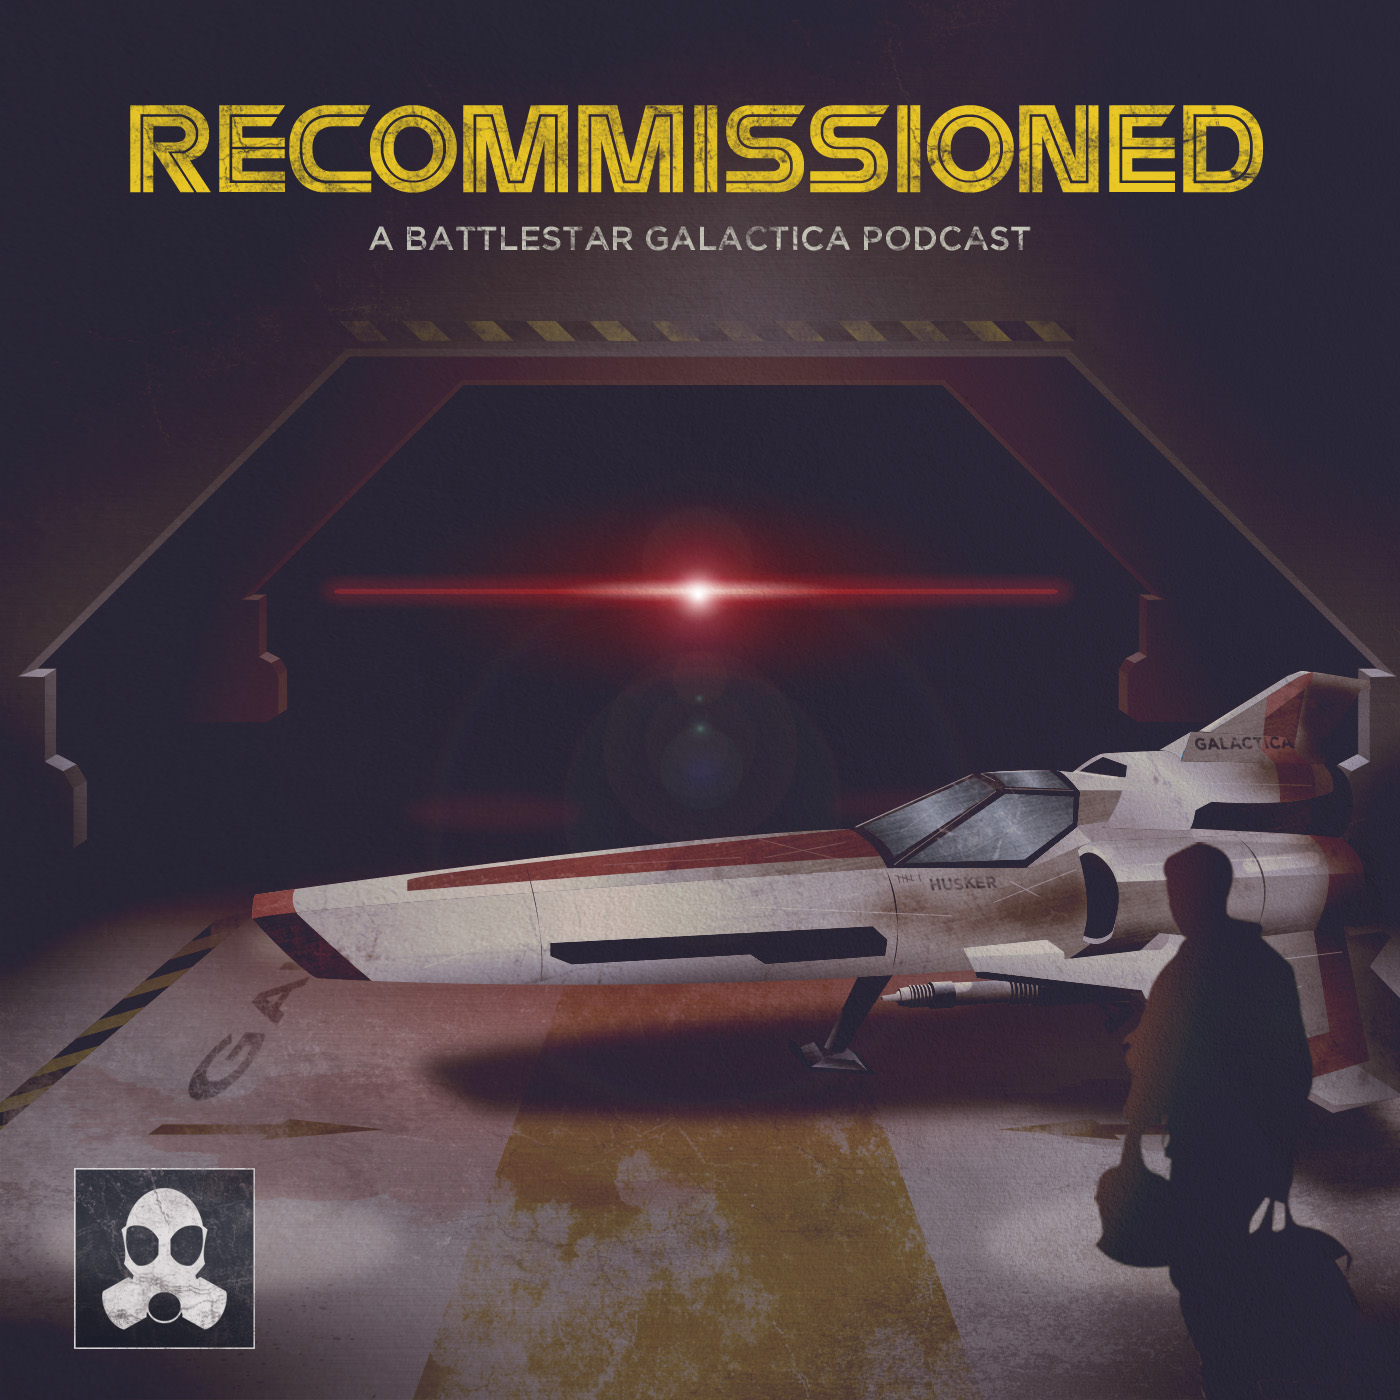 Battlestar Galactica "Miniseries Part 1"